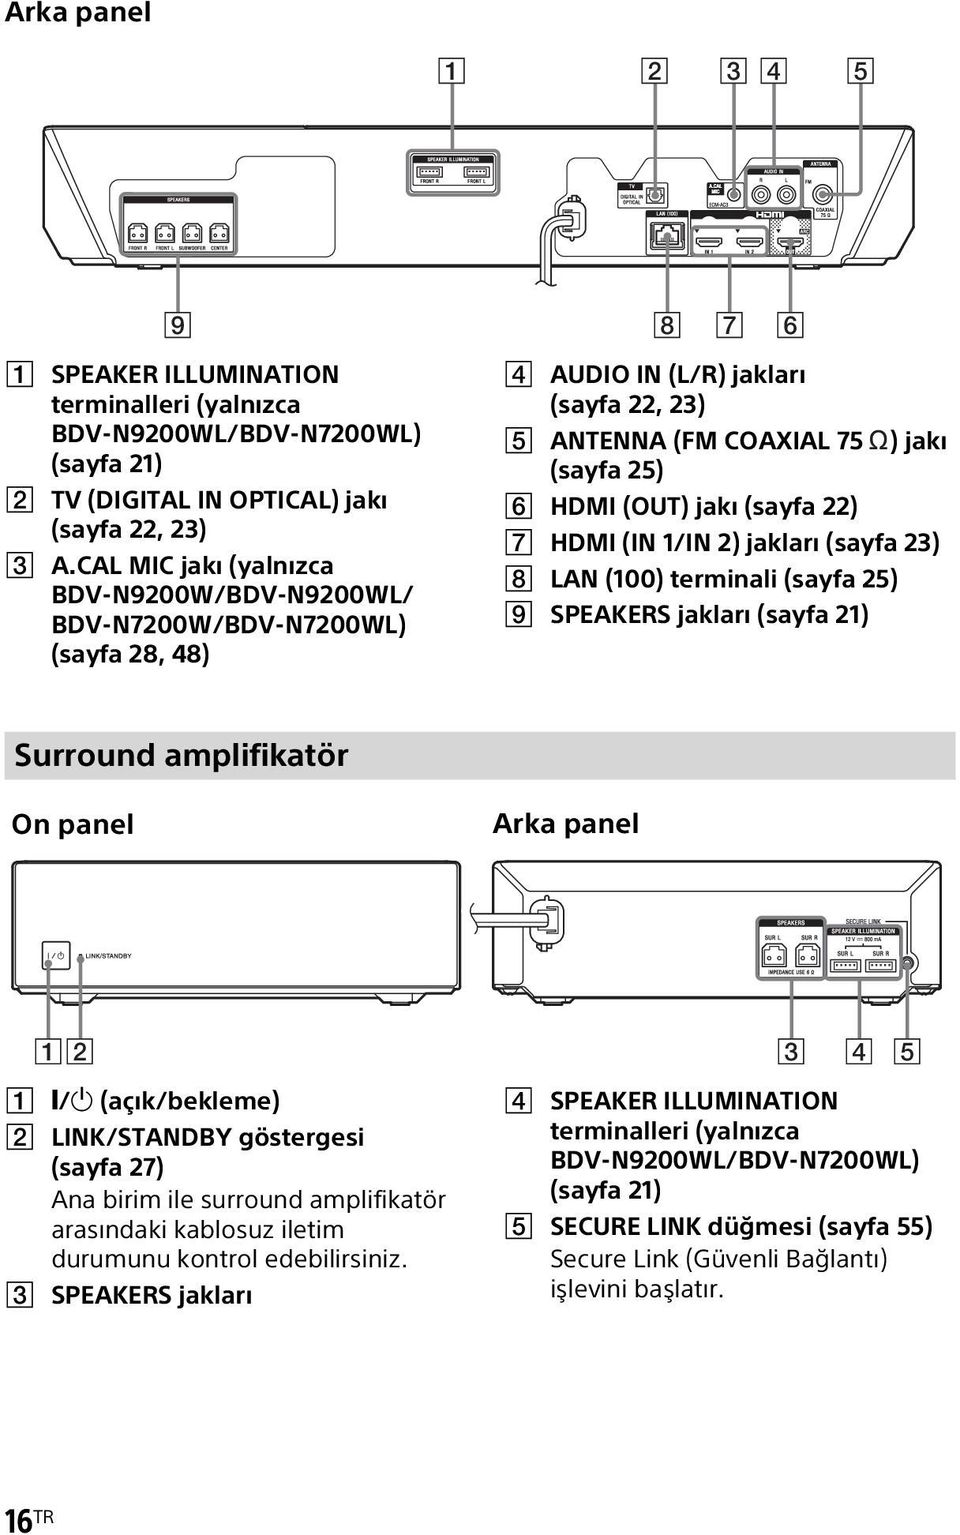 HDMI (IN 1/IN 2) jakları (sayfa 23) H LAN (100) terminali (sayfa 25) I SPEAKERS jakları (sayfa 21) Surround amplifikatör Ön panel Arka panel 12 3 4 5 A "/1 (açık/bekleme) B LINK/STANDBY göstergesi